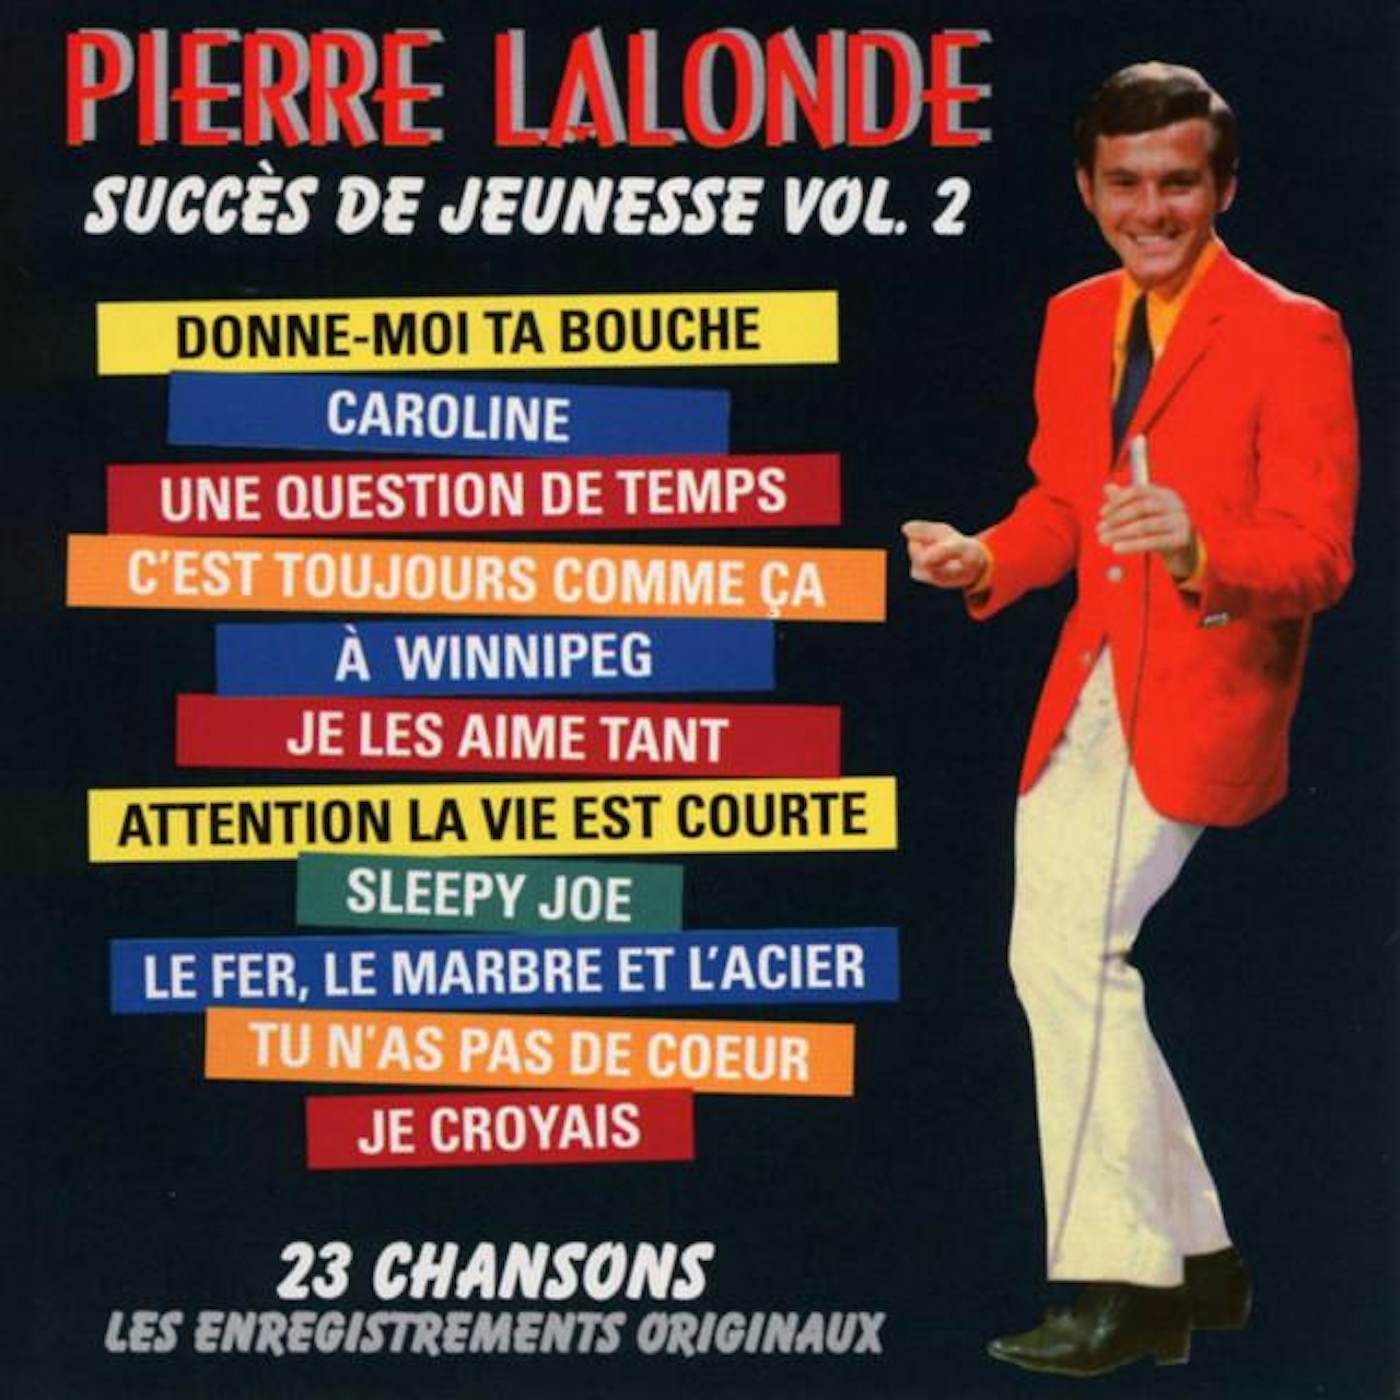 Pierre Lalonde